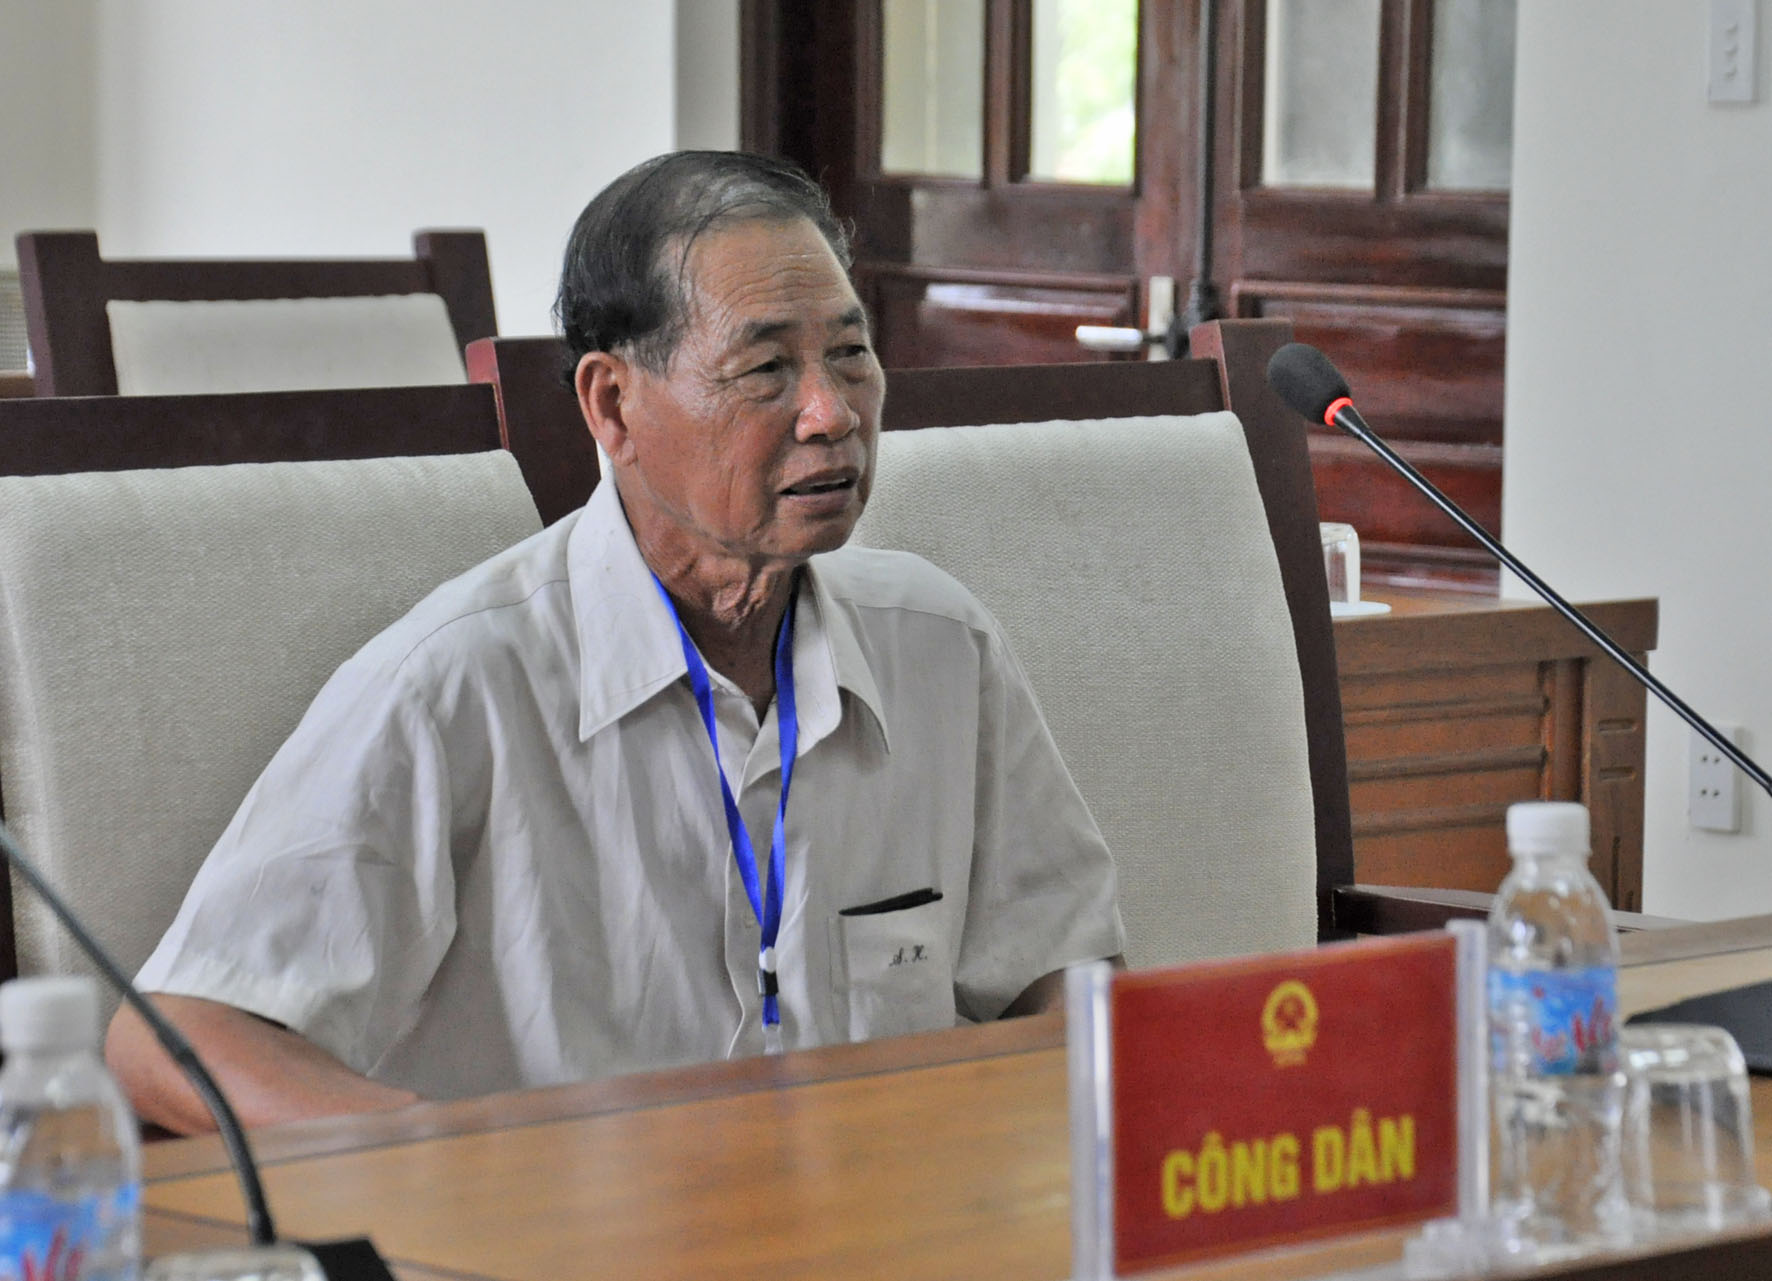 Ông Ninh A Hồ, thôn Nà Ếch, xã Húc Động, huyện Bình Liêu kiến nghị được giải quyết chế độ chính sách những năm ông công tác